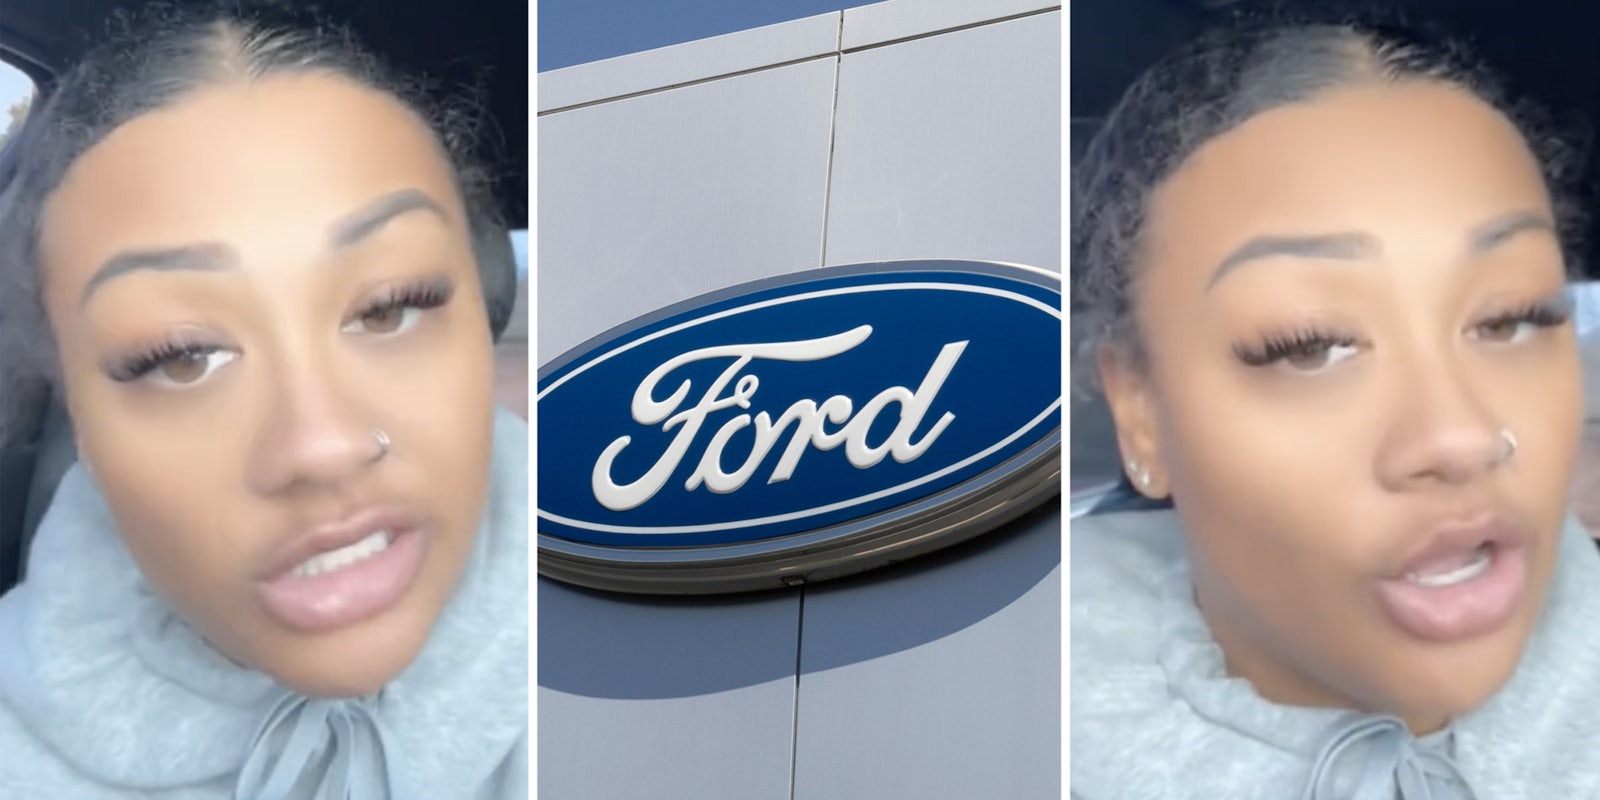 Woman talking(l+r), Ford sign(c)